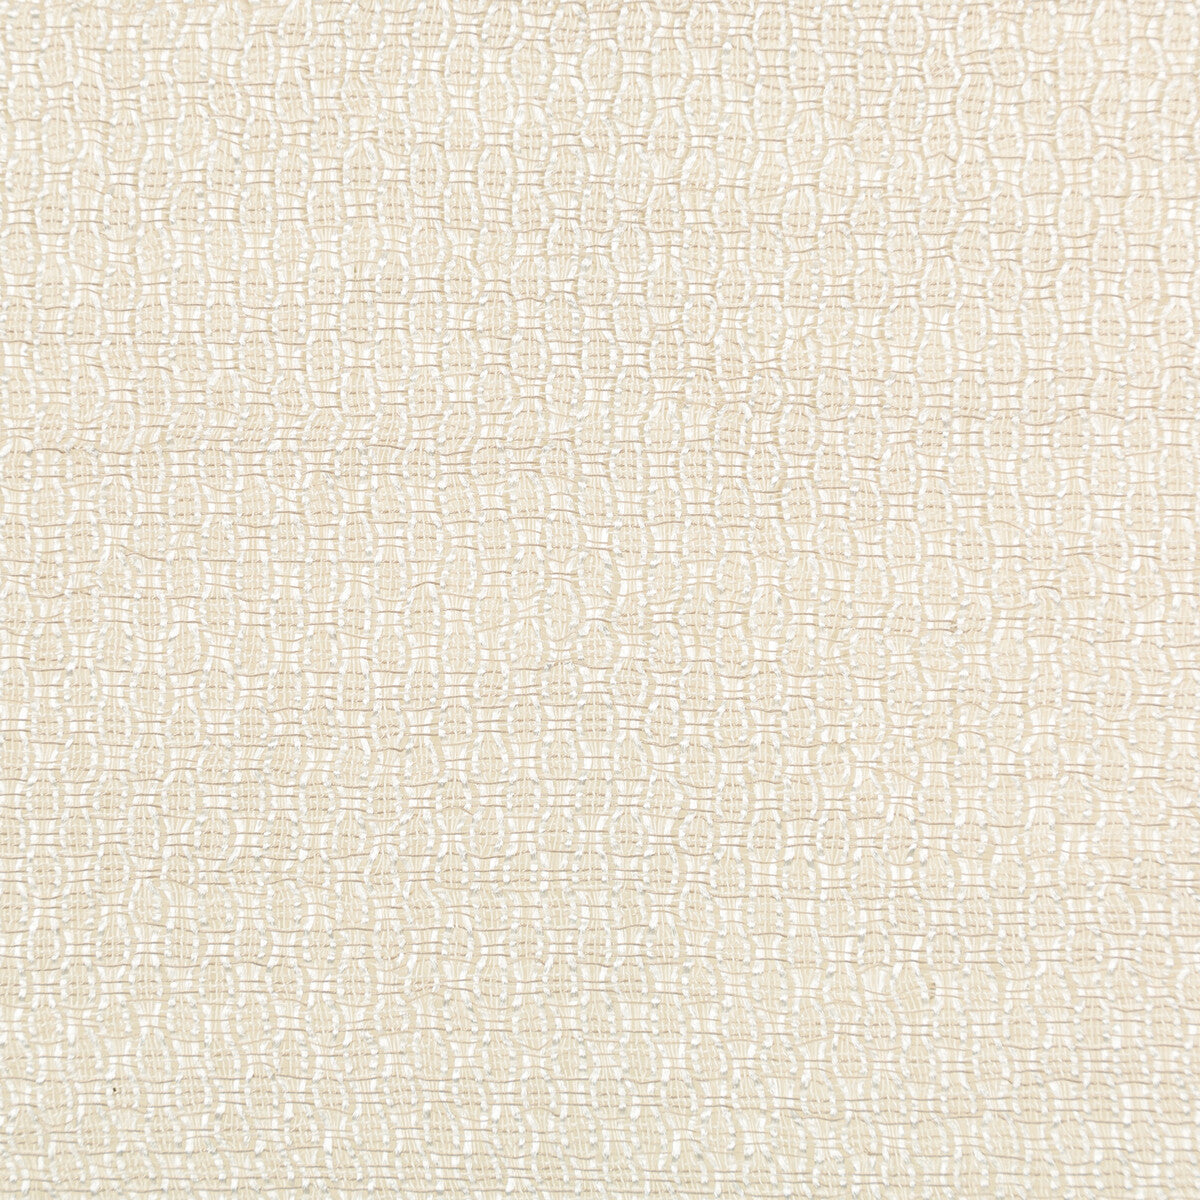 Kravet Basics fabric in 4766-16 color - pattern 4766.16.0 - by Kravet Basics